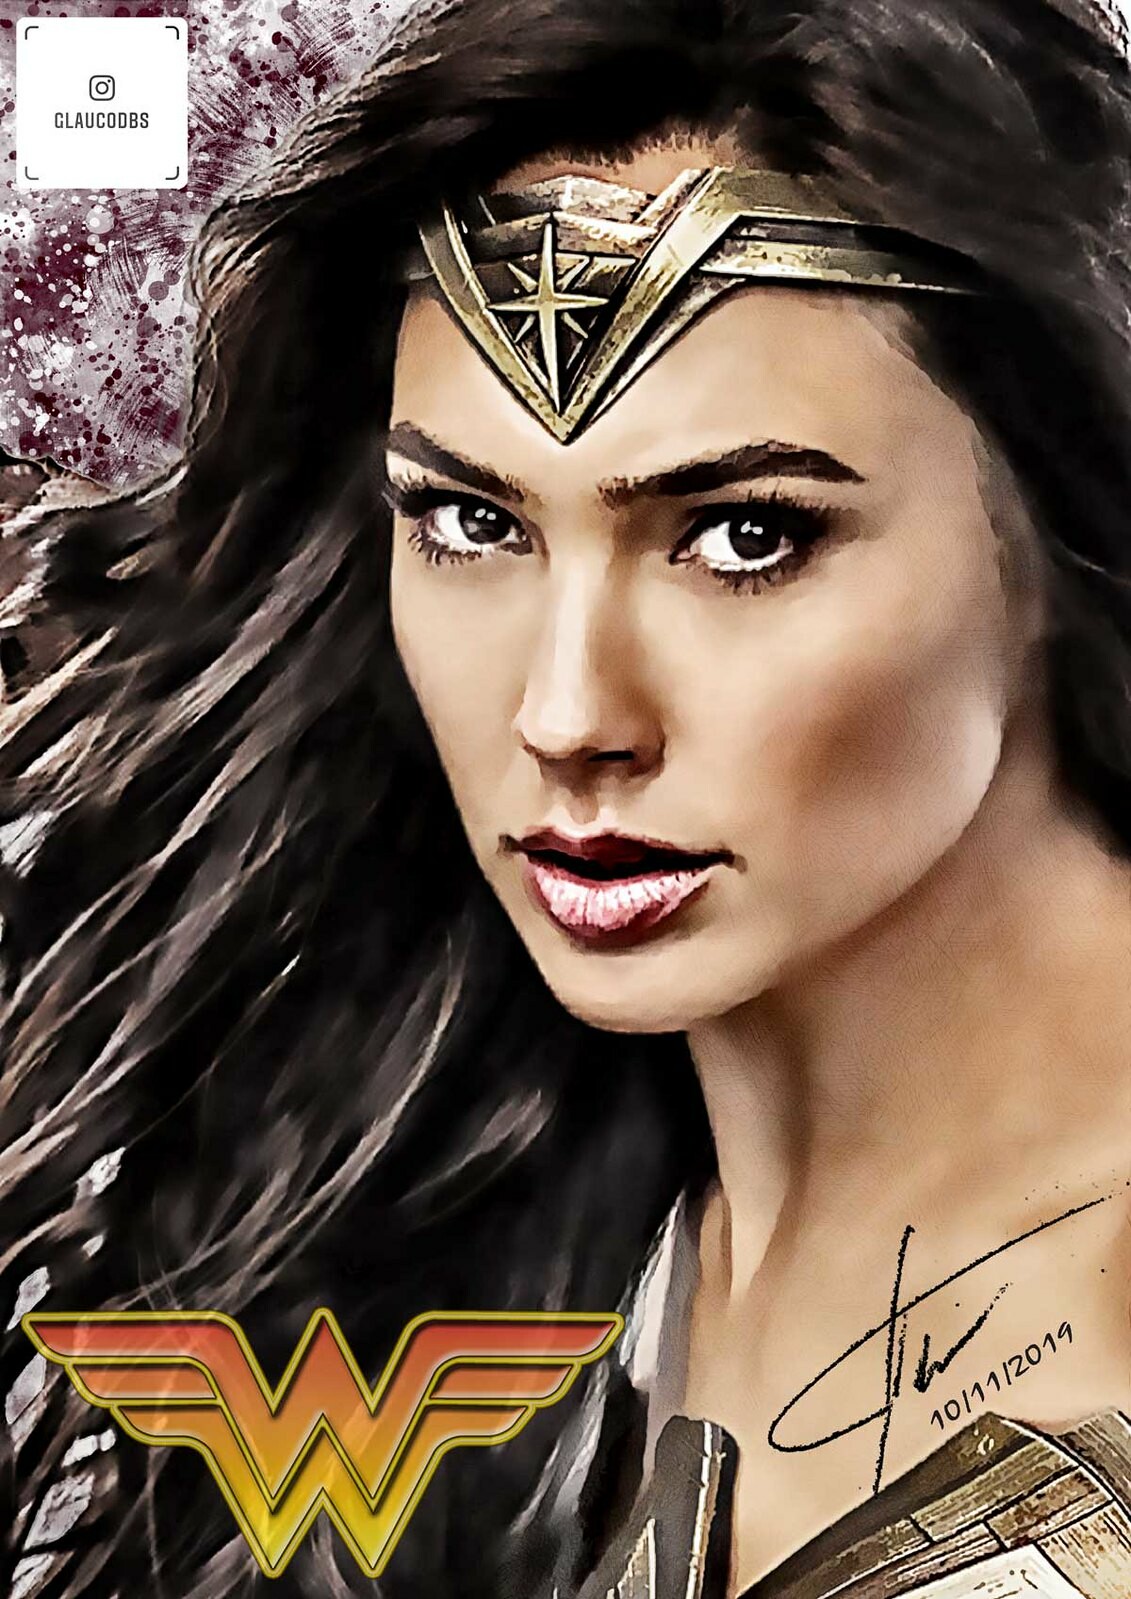 Wonder Woman poster drawing free image download